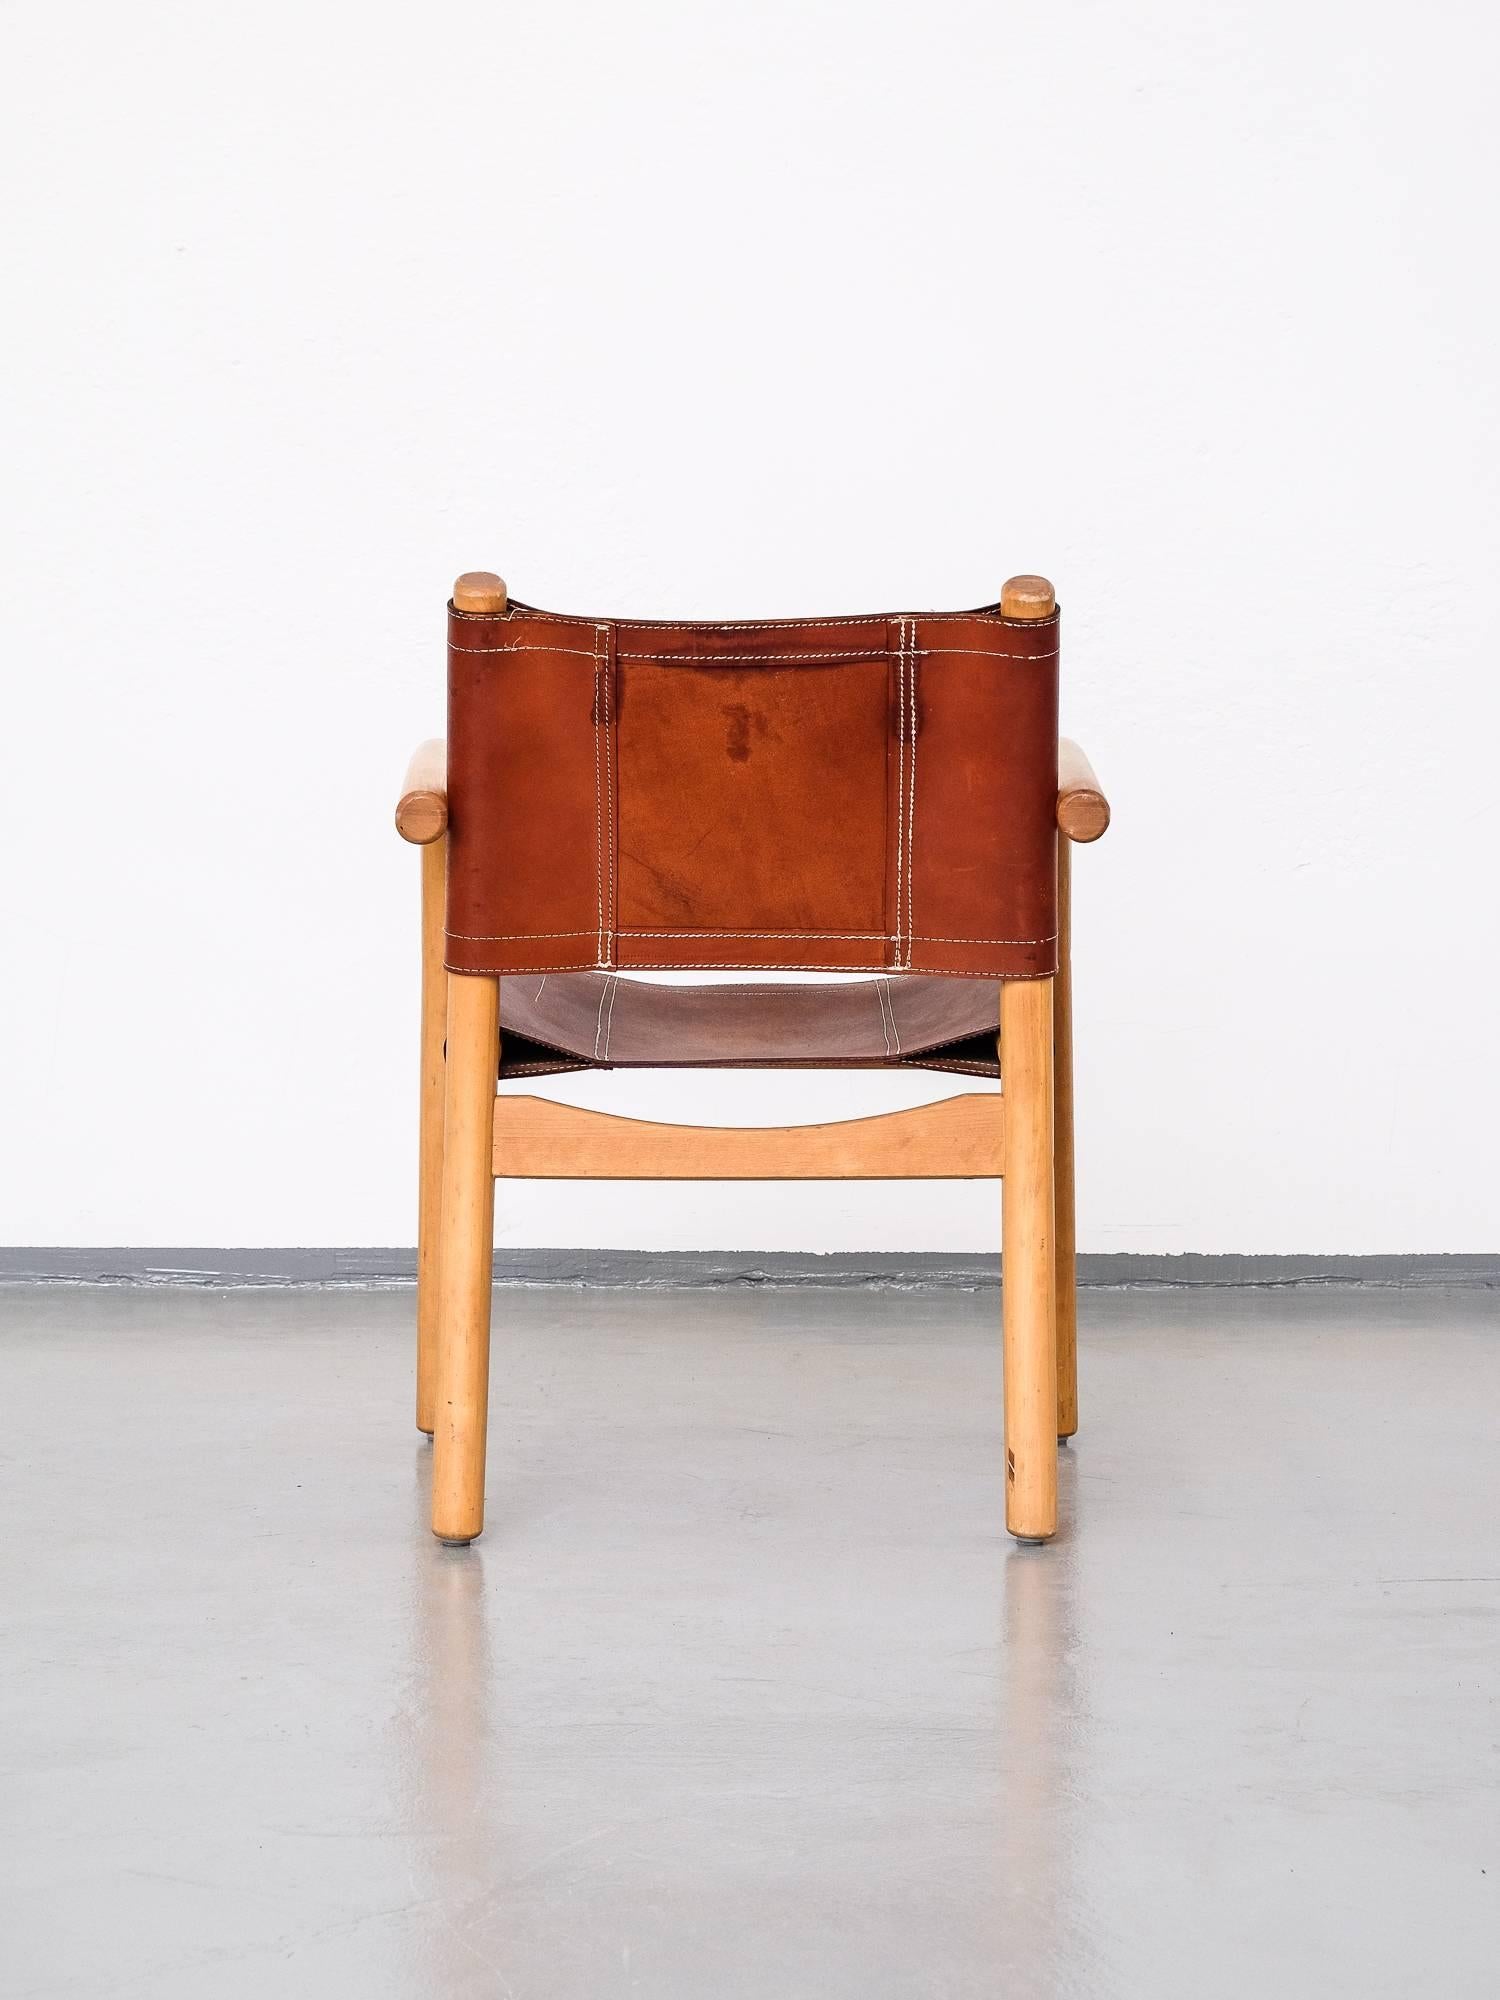 Late 20th Century Scandinavian Modern 1970s Safari Chair 411 by Ben af Schultén for Artek